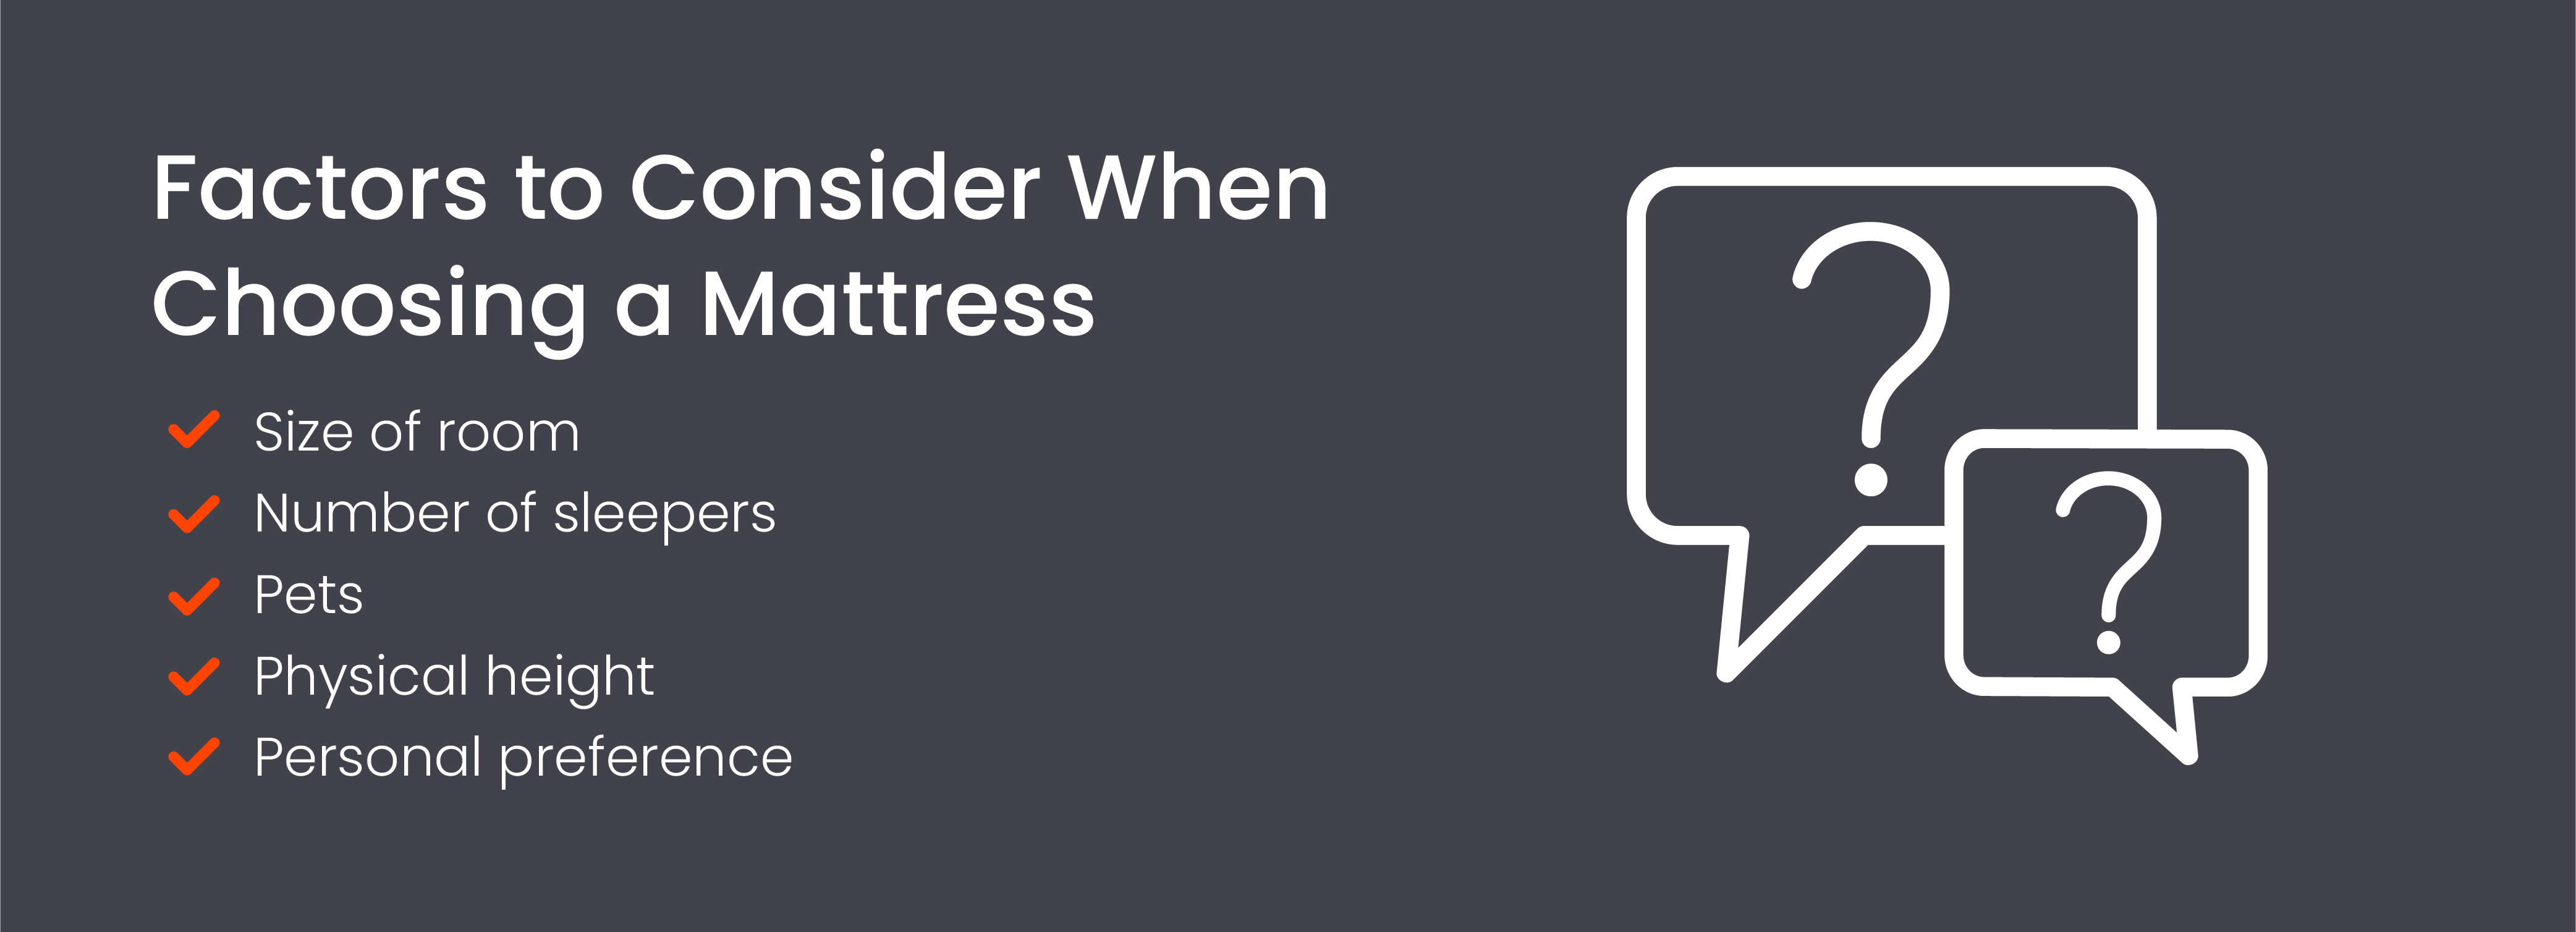 Factors to consider when choosing a mattress